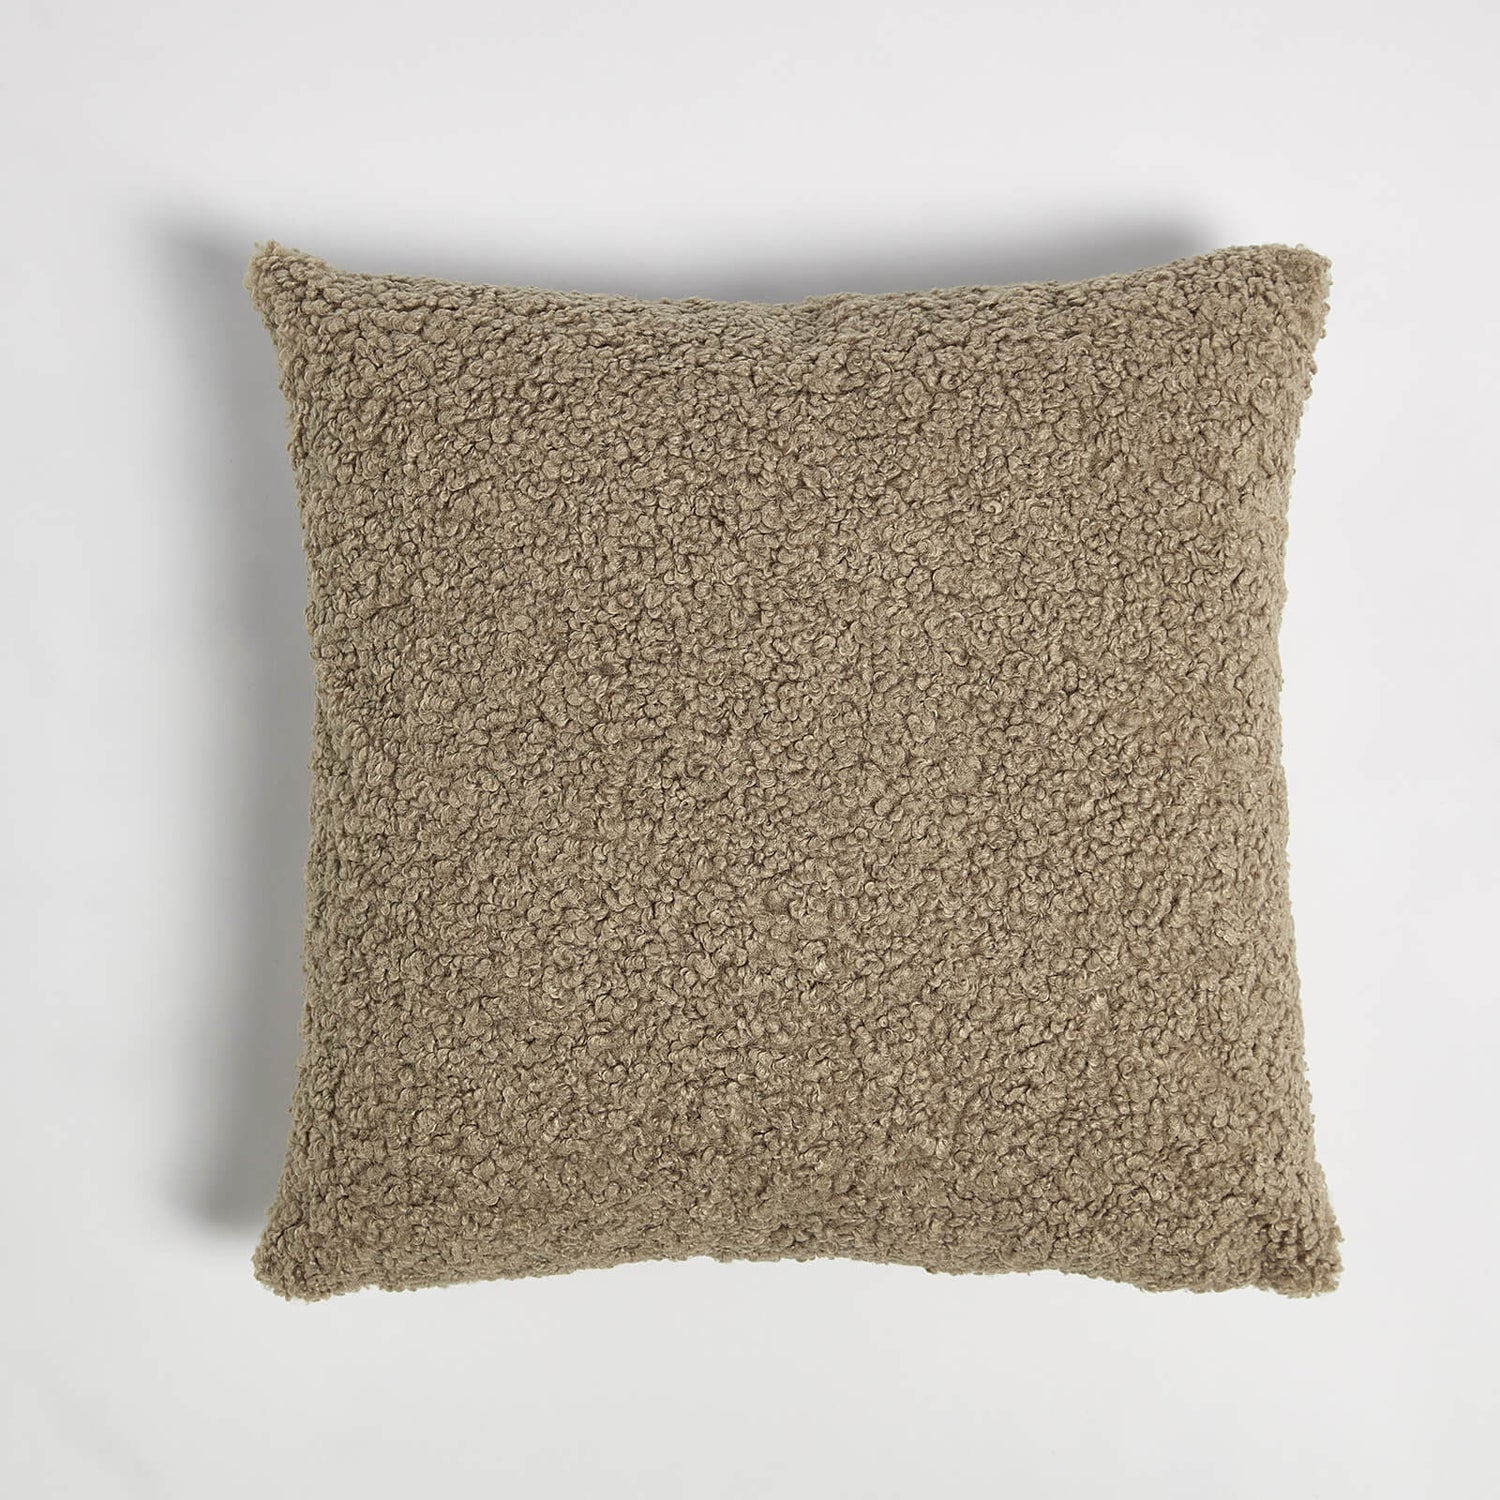 ïn home Faux Sheep Skin Cushion - Light Brown - 50x50cm